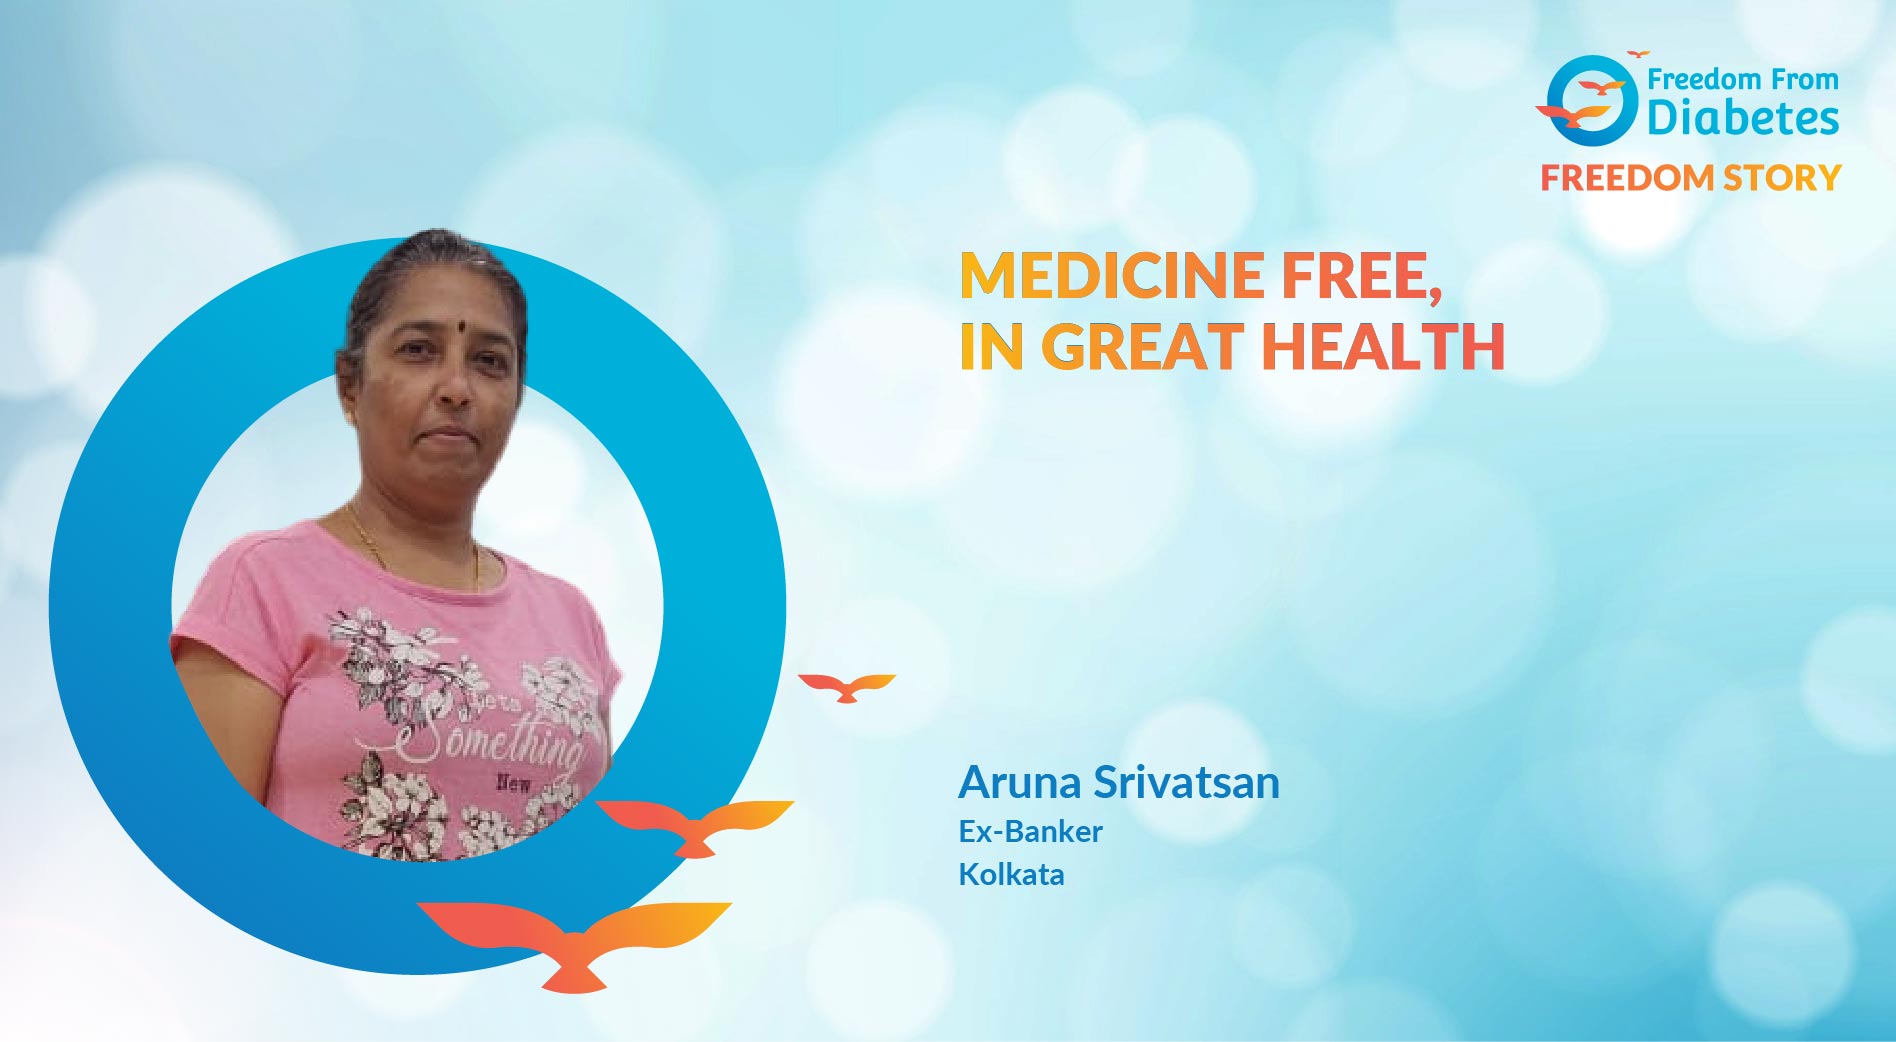 Aruna Srivatsan: A story of massive transformation